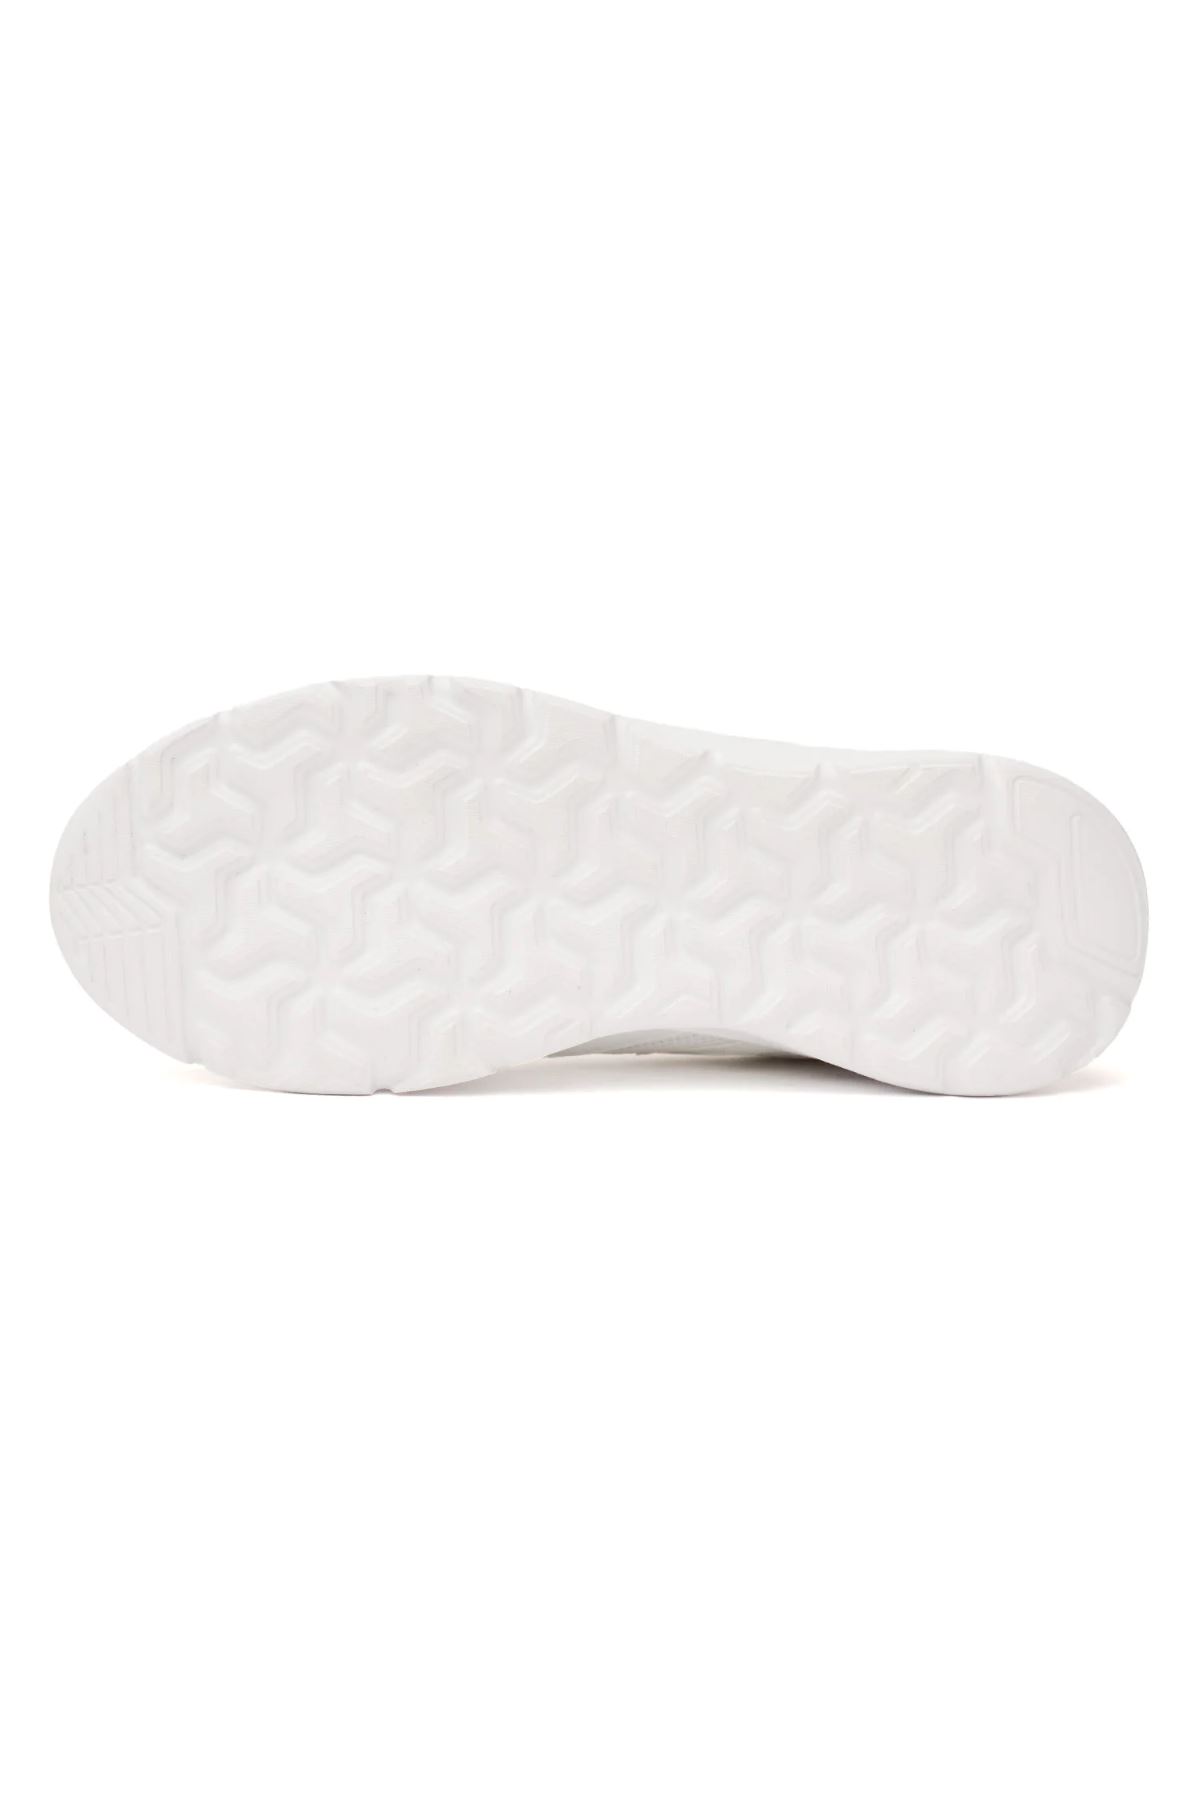 Hummel Hml Carıo Kadın Beyaz Spor Ayakkabı - 900465-9001